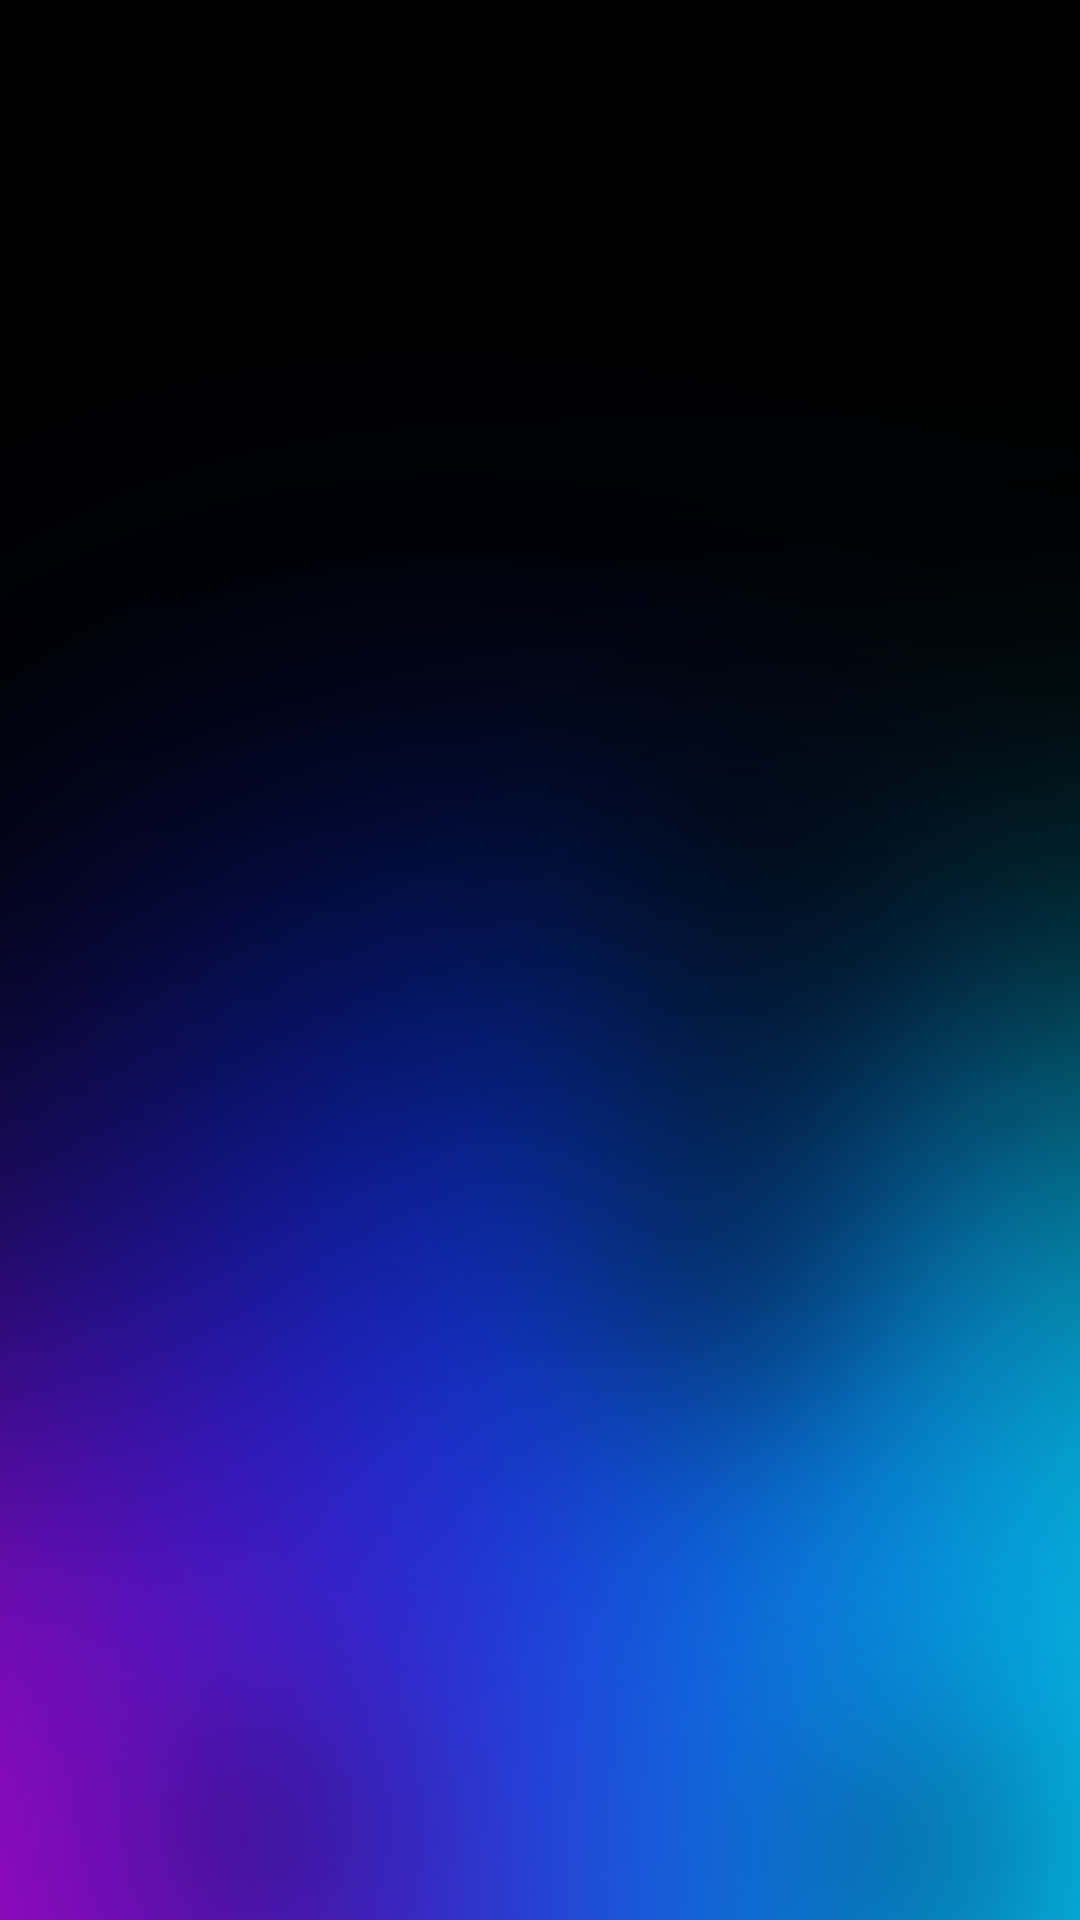 Disfrutade La Belleza De Un Iphone Negro Y Azul. Fondo de pantalla